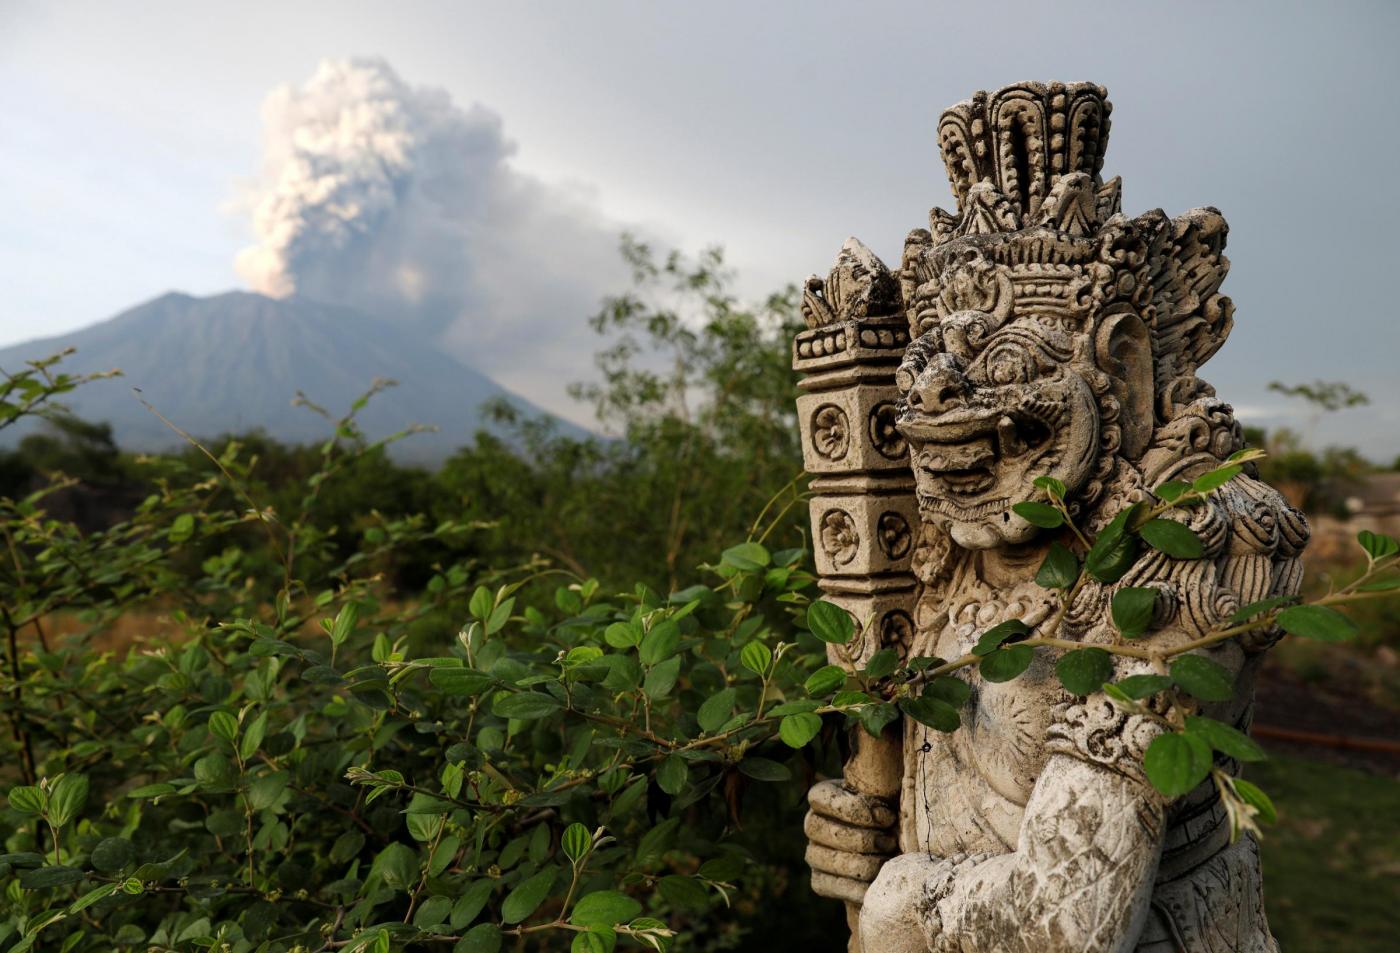 vulcano agung indonesia